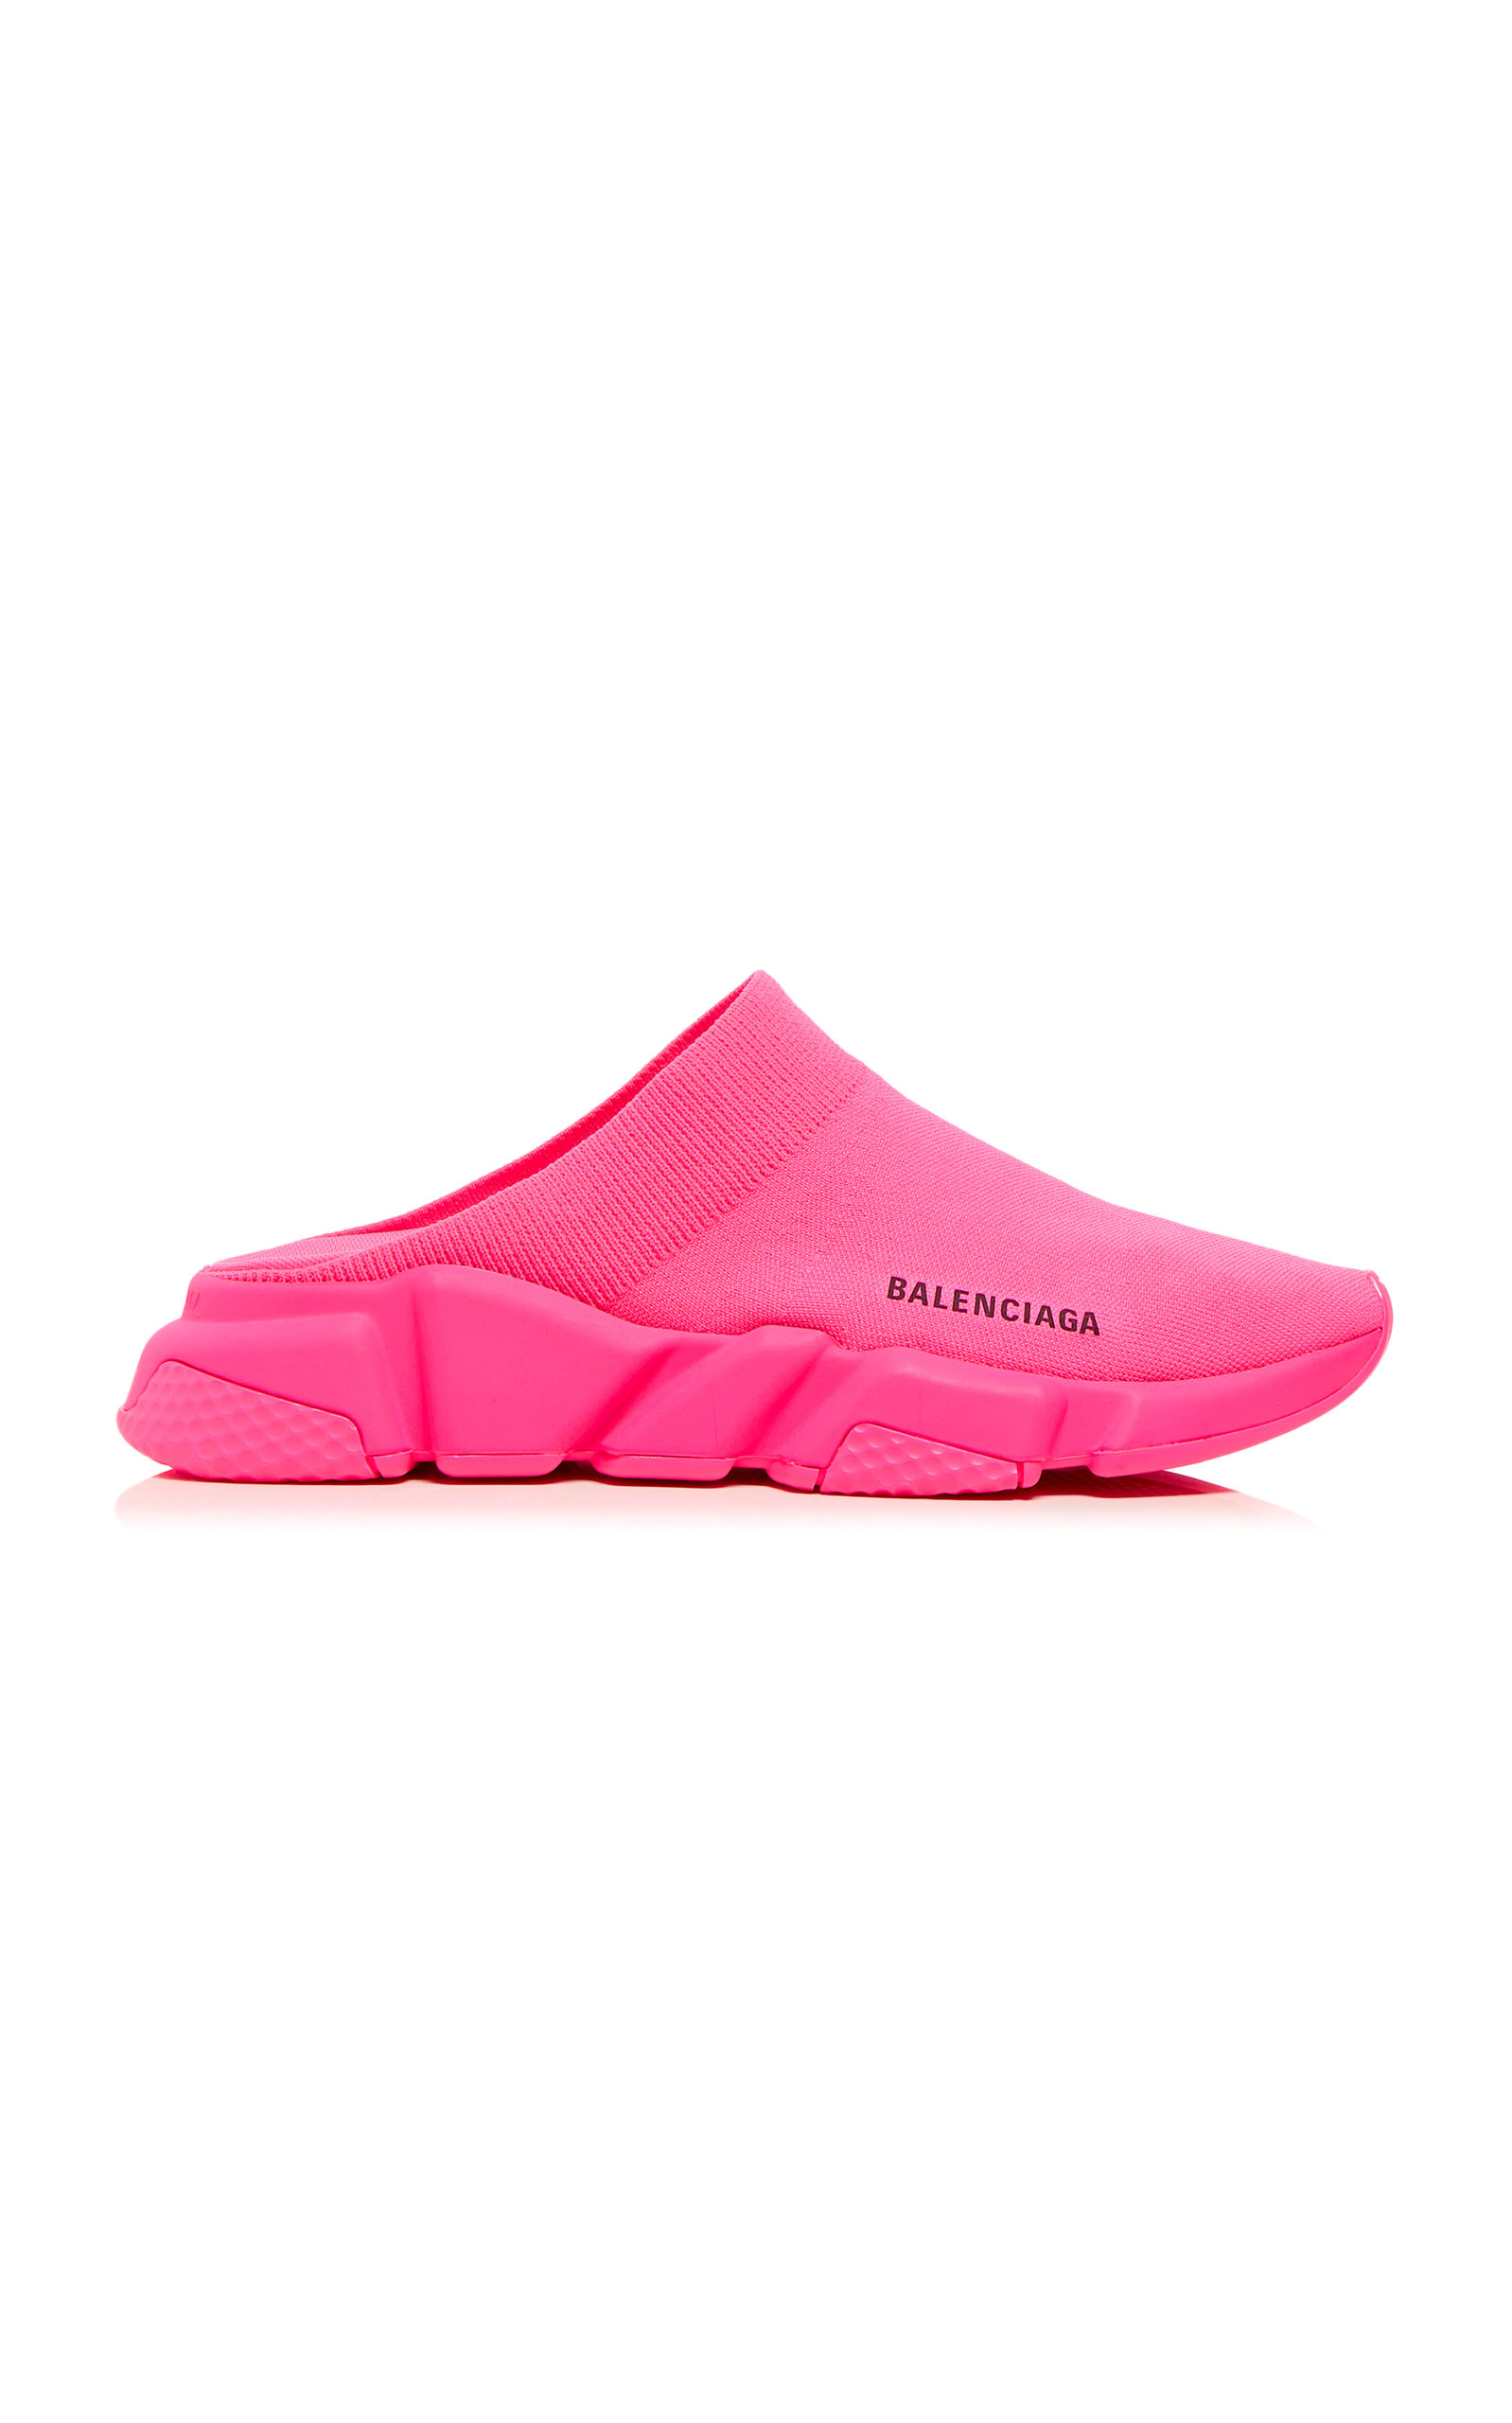 Balenciaga - Speed Knit Slip-On Mules - Pink - IT 37 - Moda Operandi